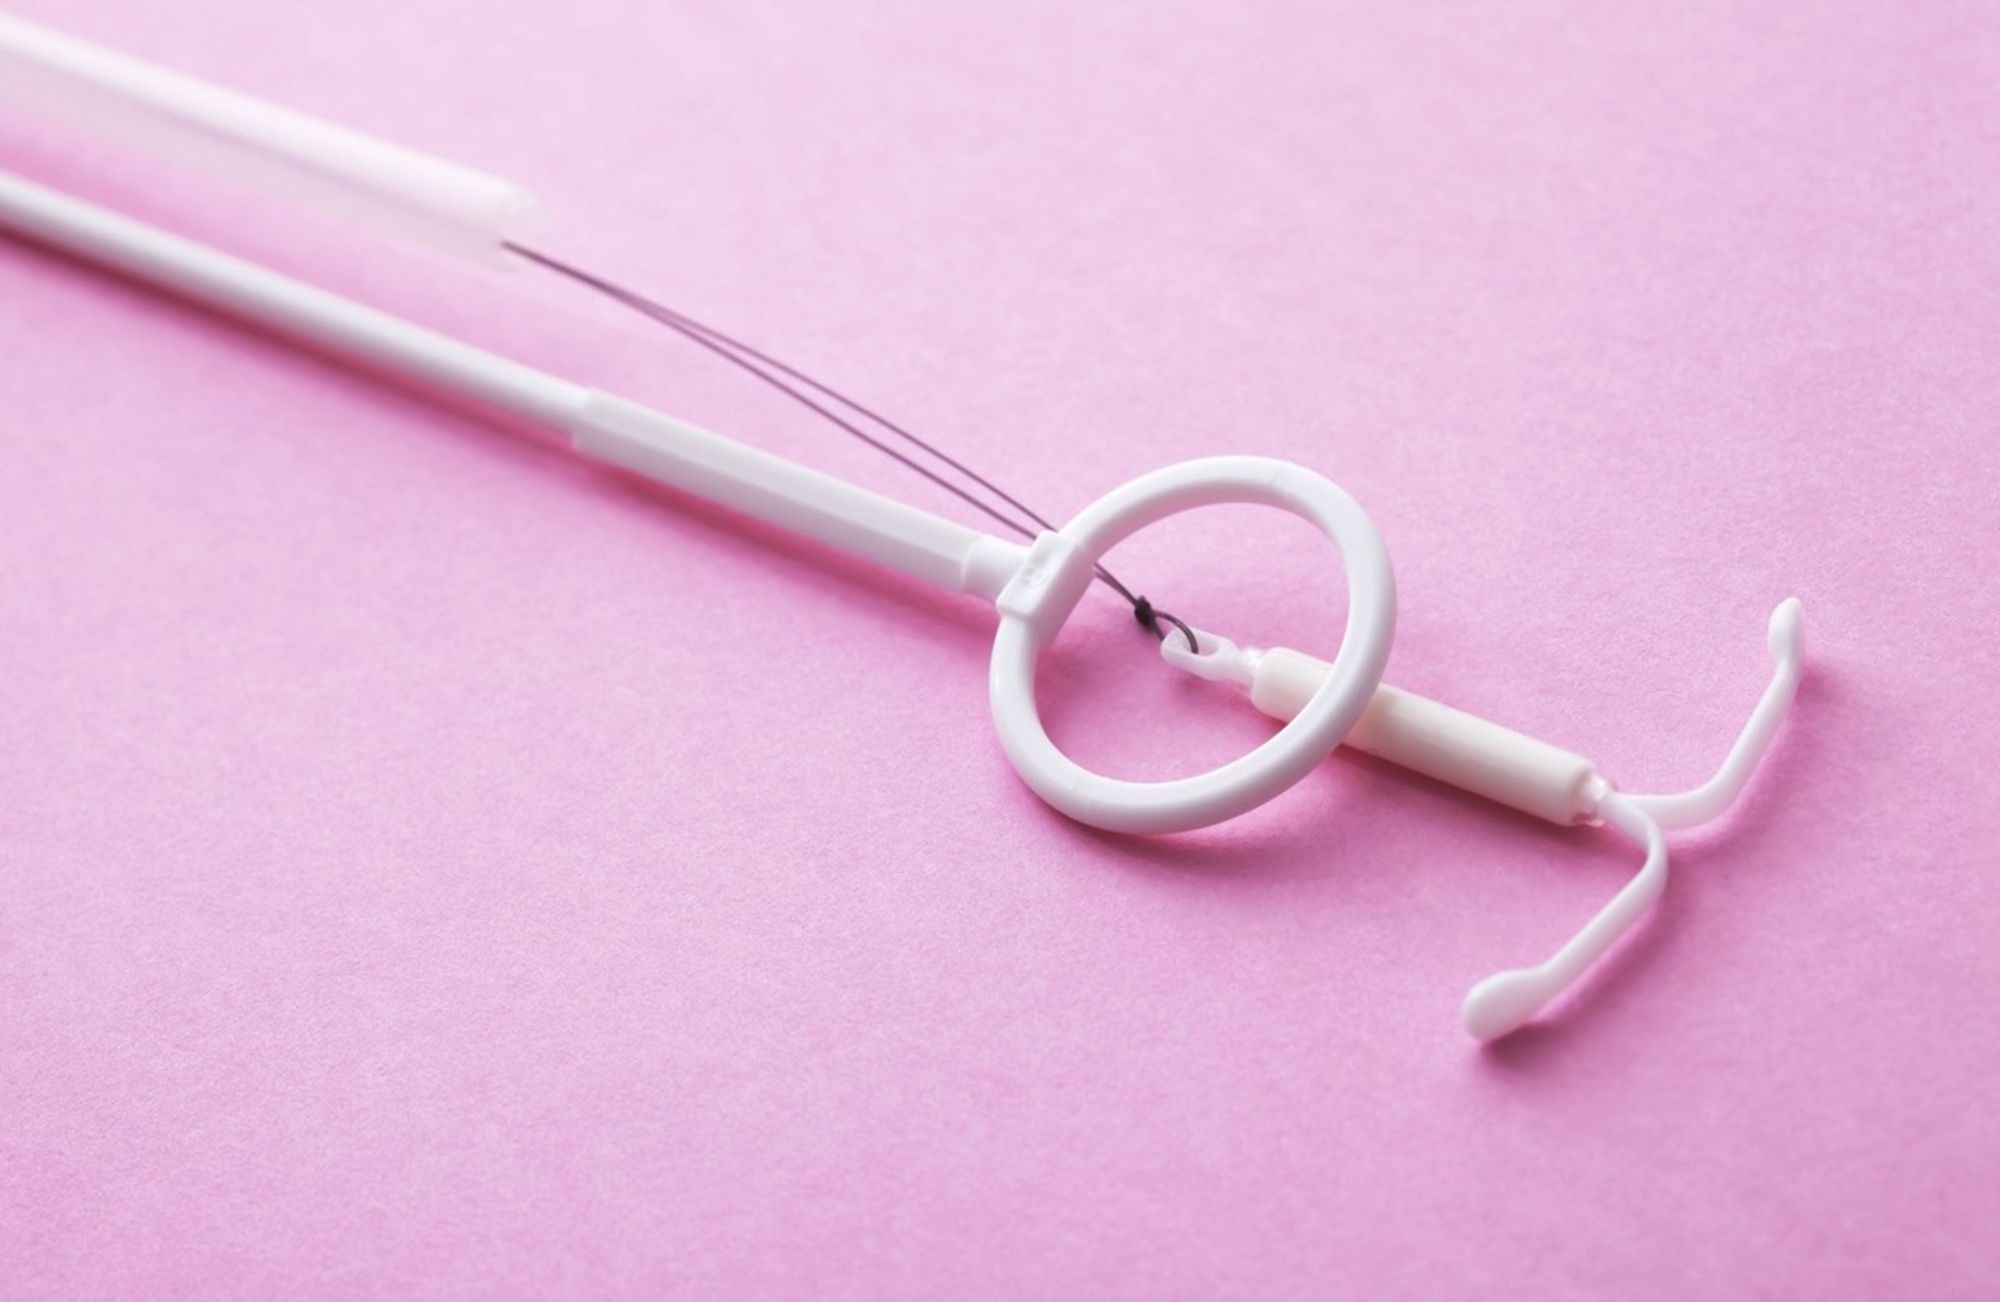 了解避孕環的好處與風險，正確選擇和使用避孕環。